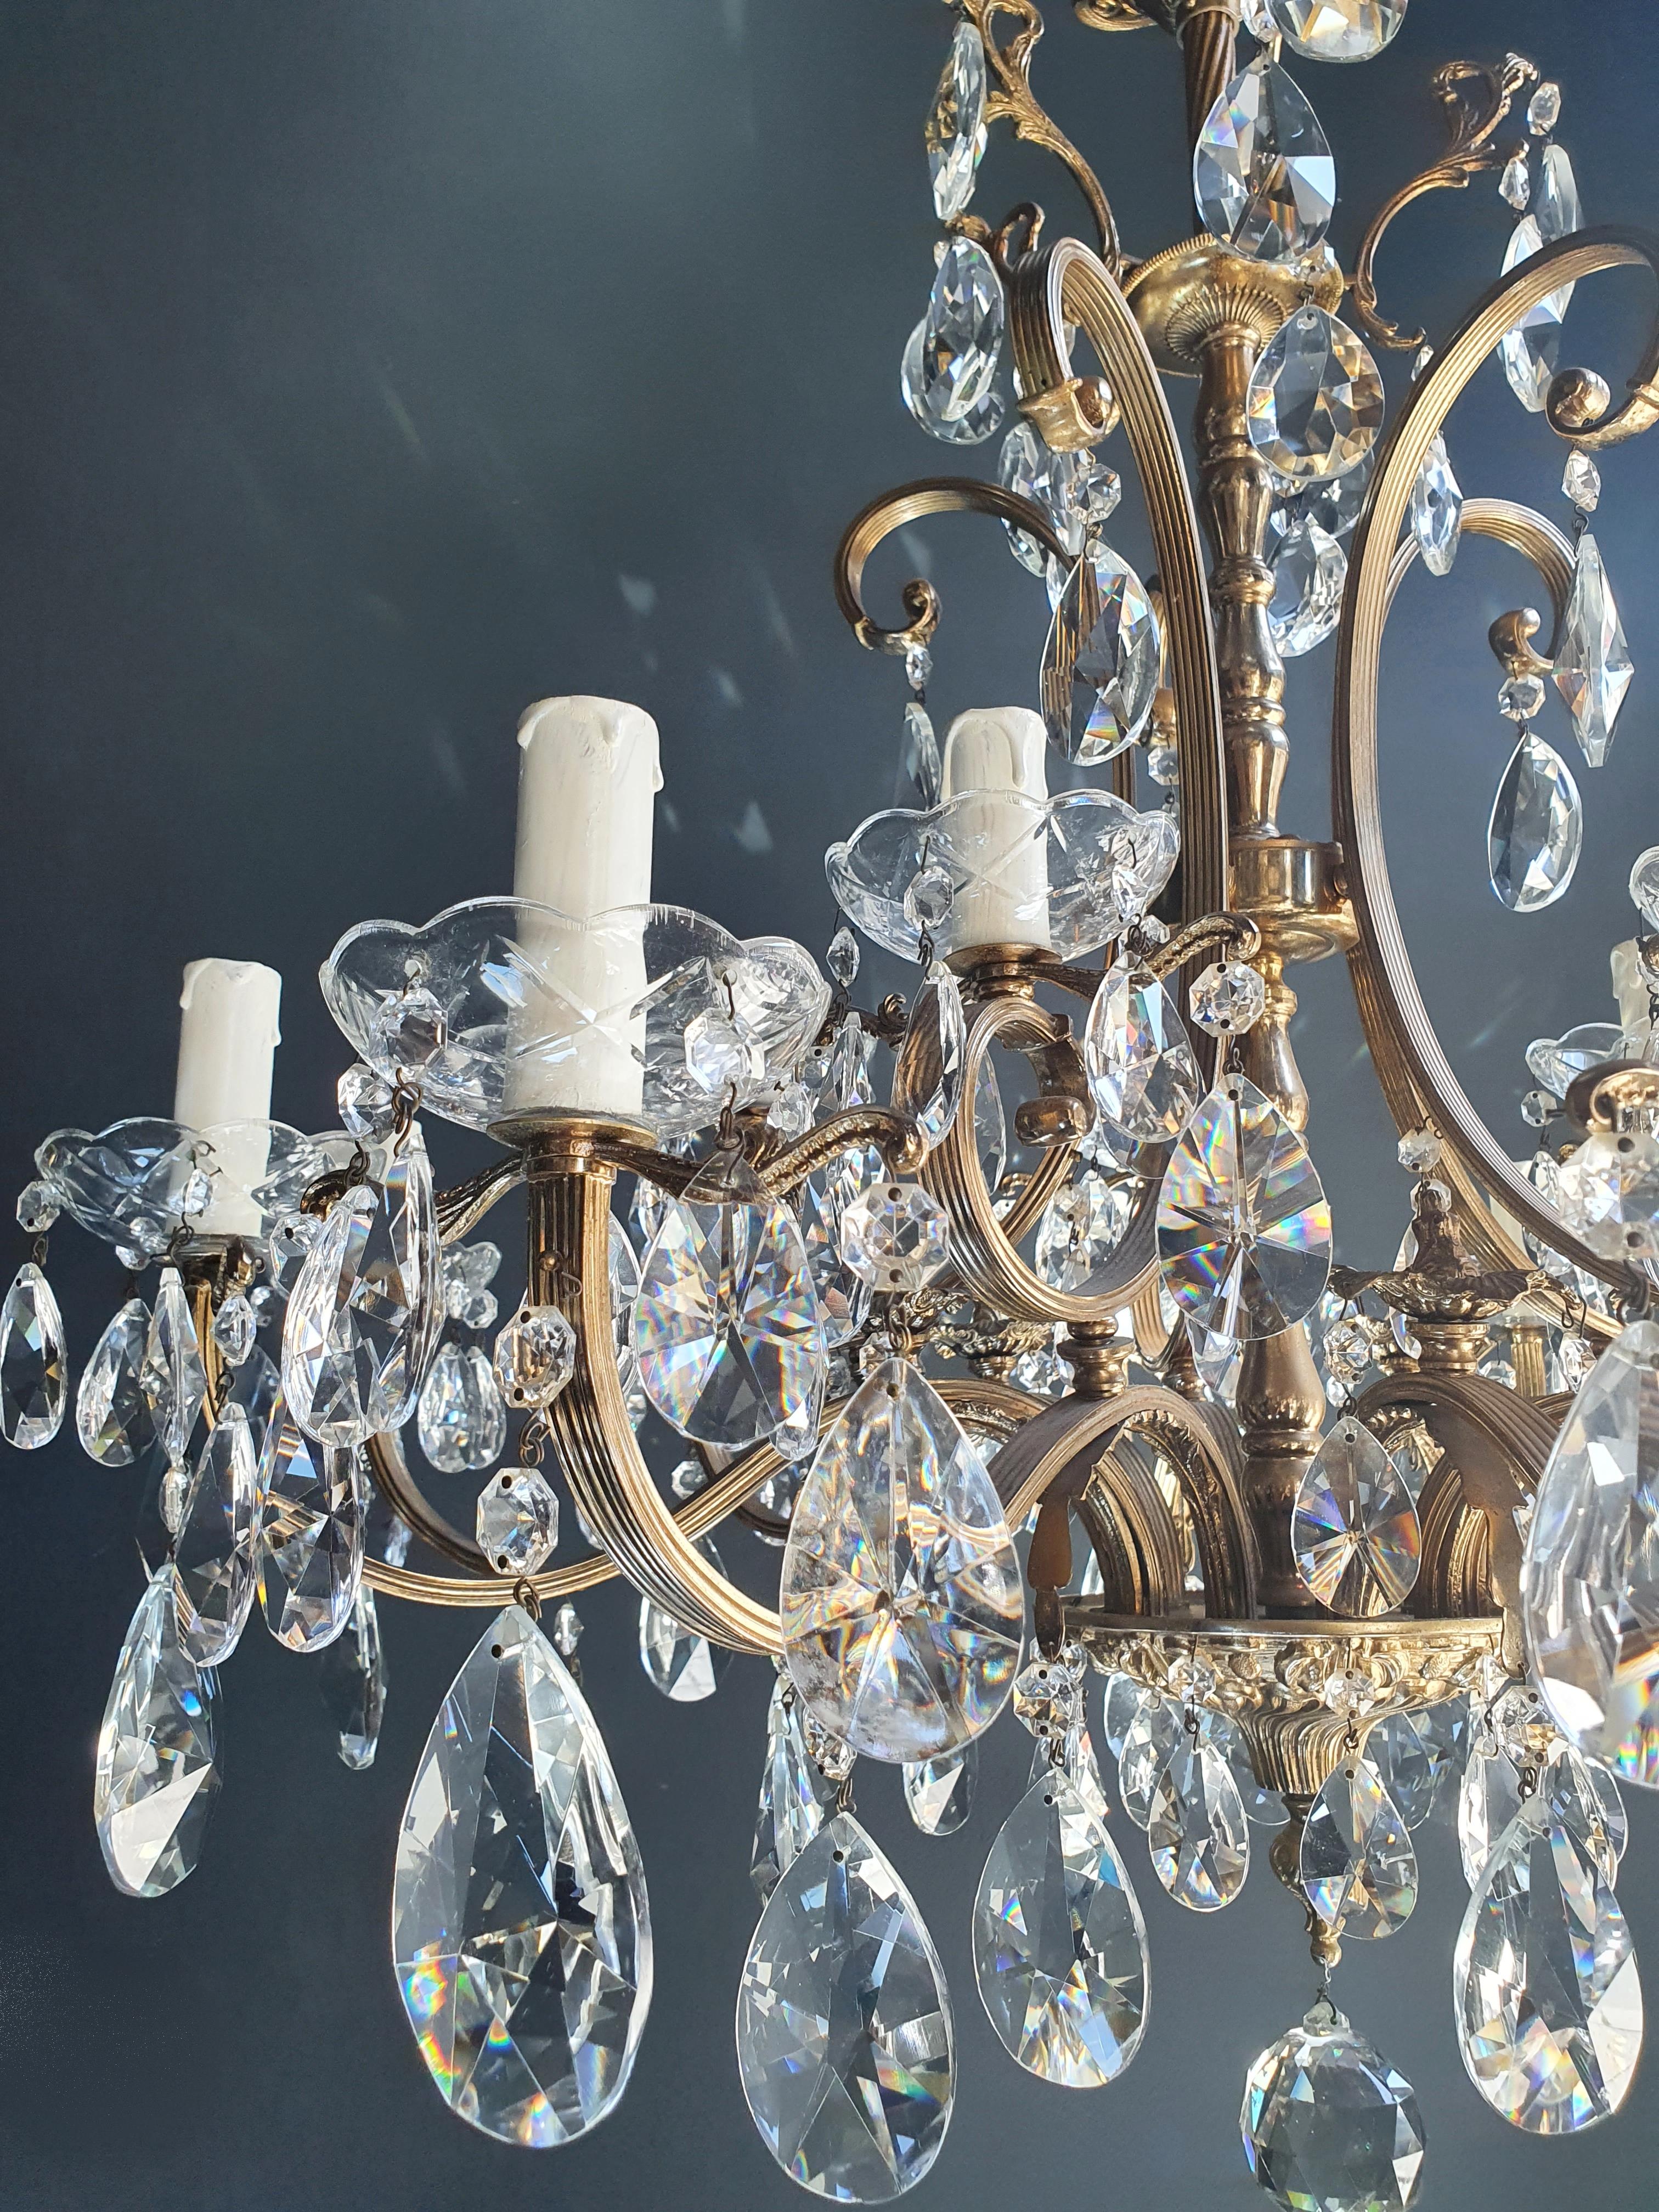 Mid-20th Century Sparkle Crystal Brass Candelabrum Antique Chandelier Ceiling Lustre Art Nouveau